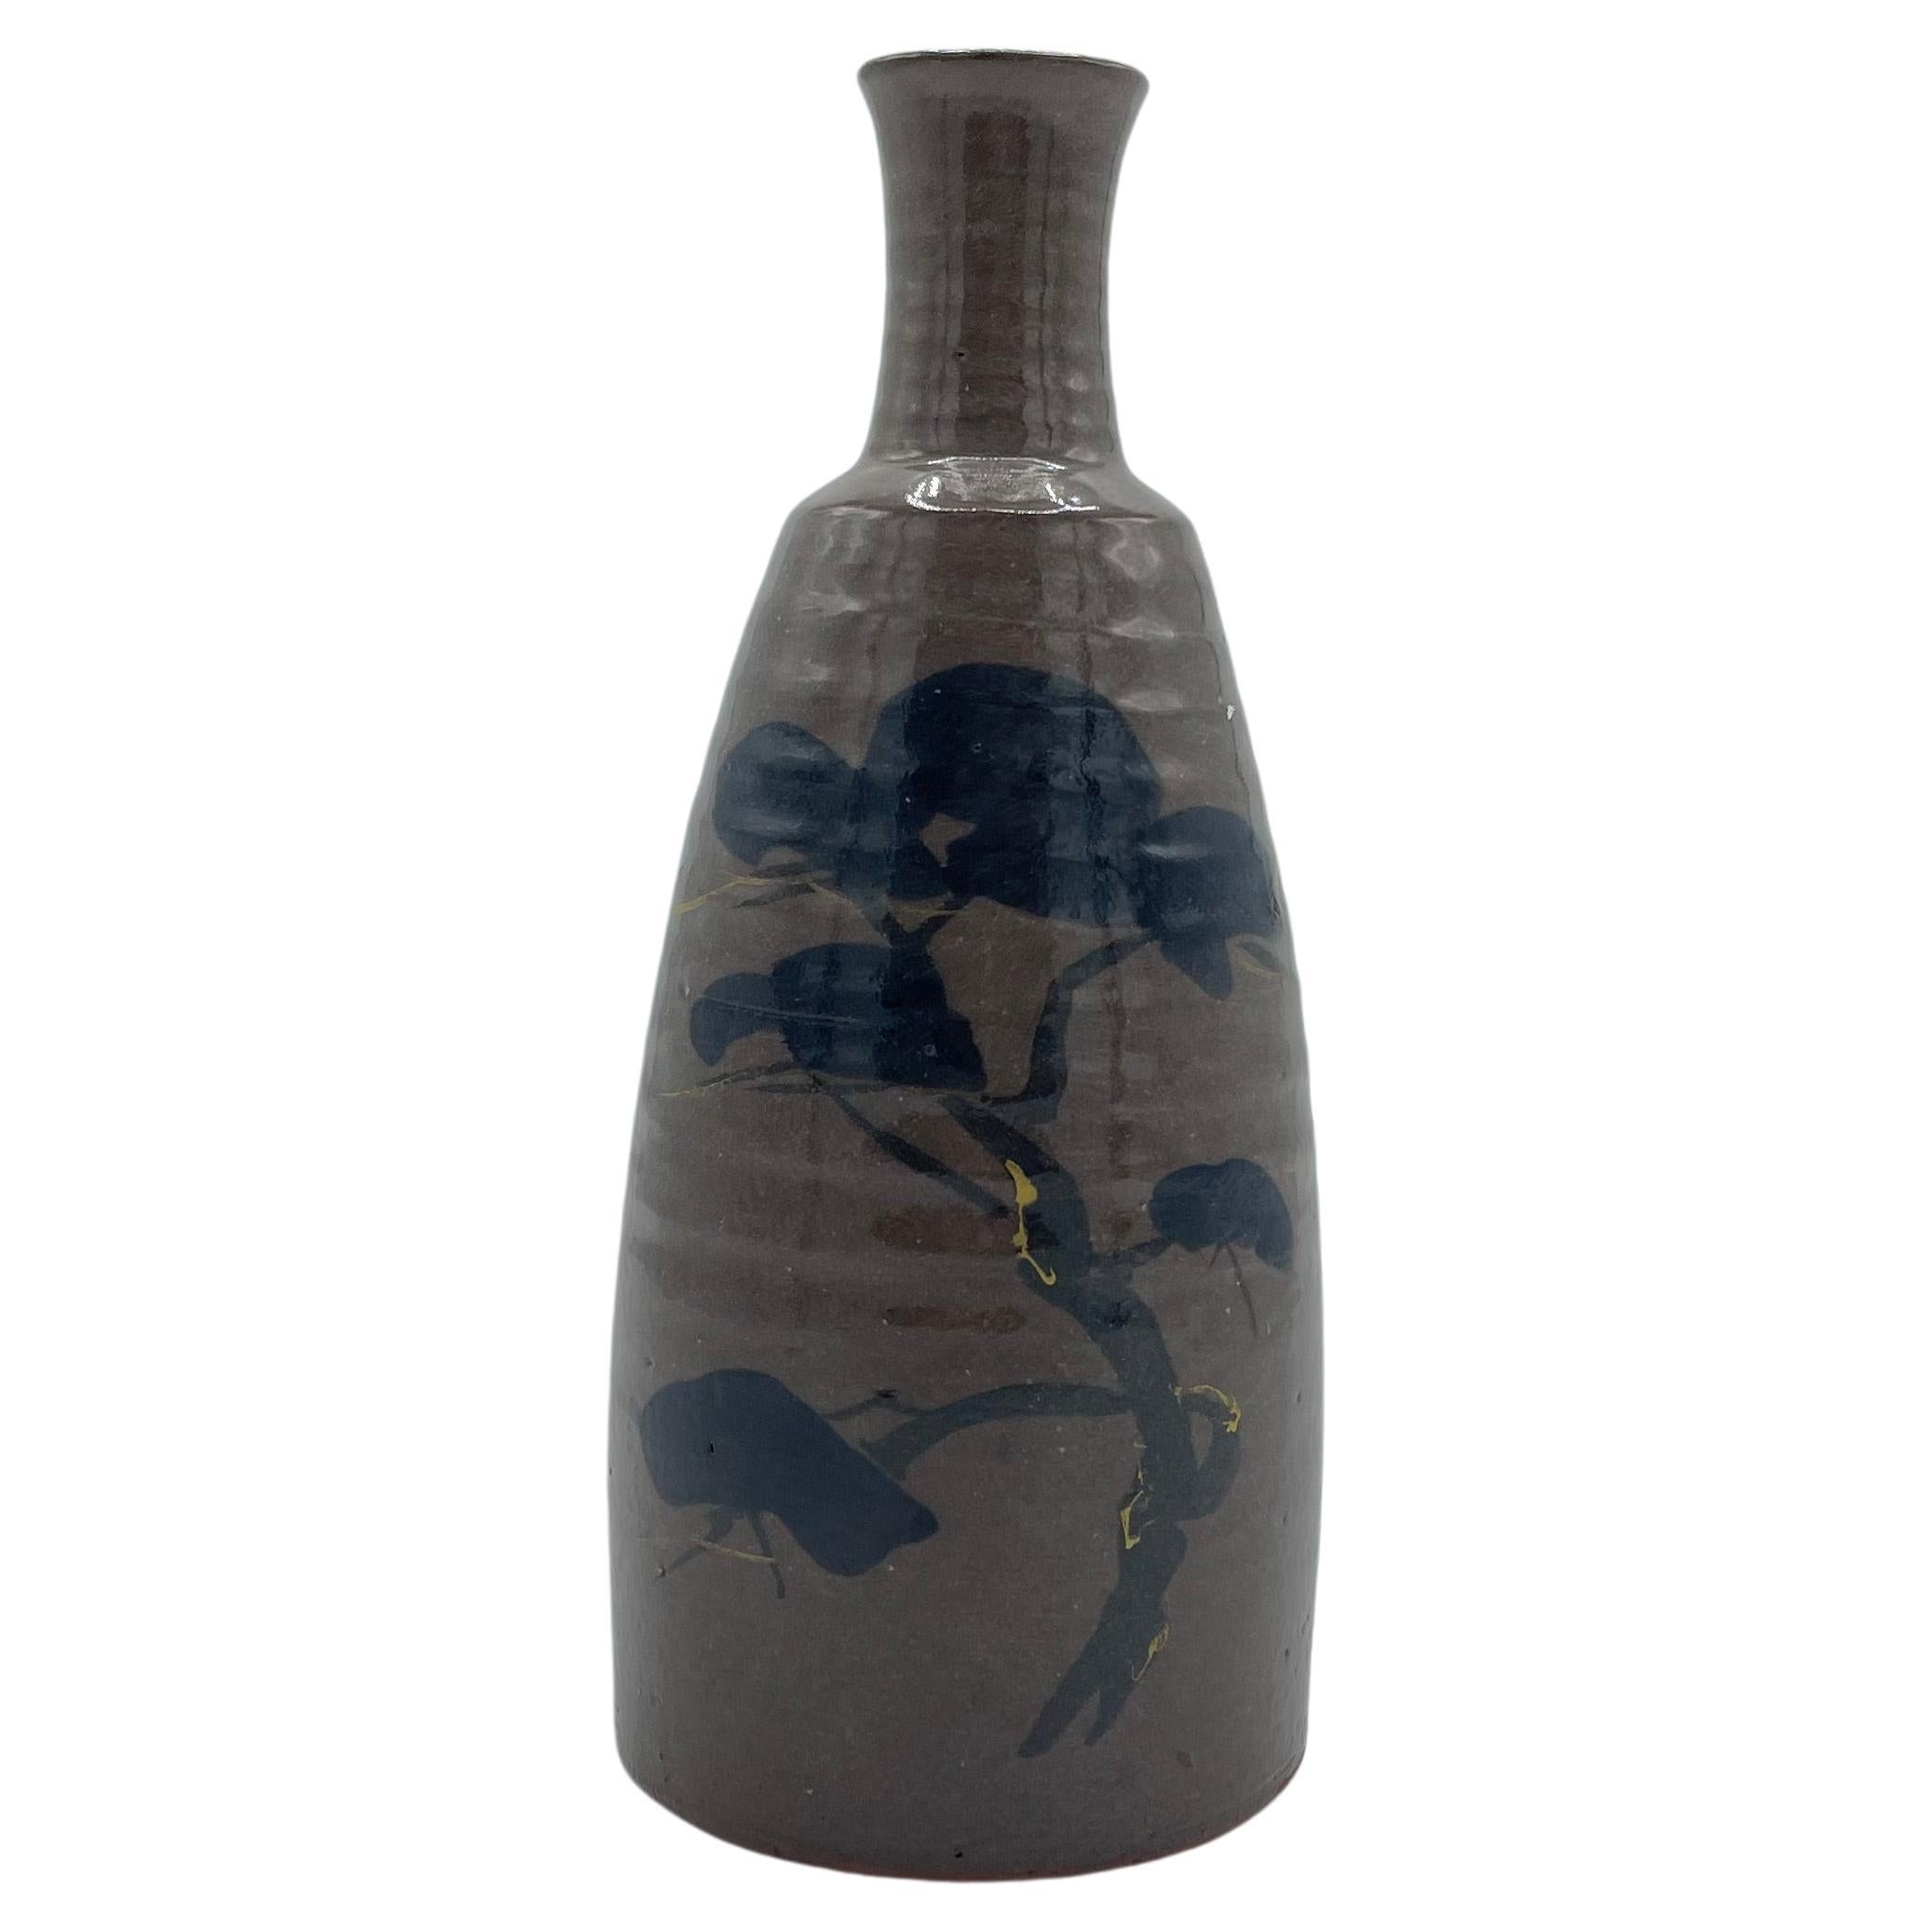 Japanese Porcelain Bottle of Sake Tokkuri 'Matsu' 1980s